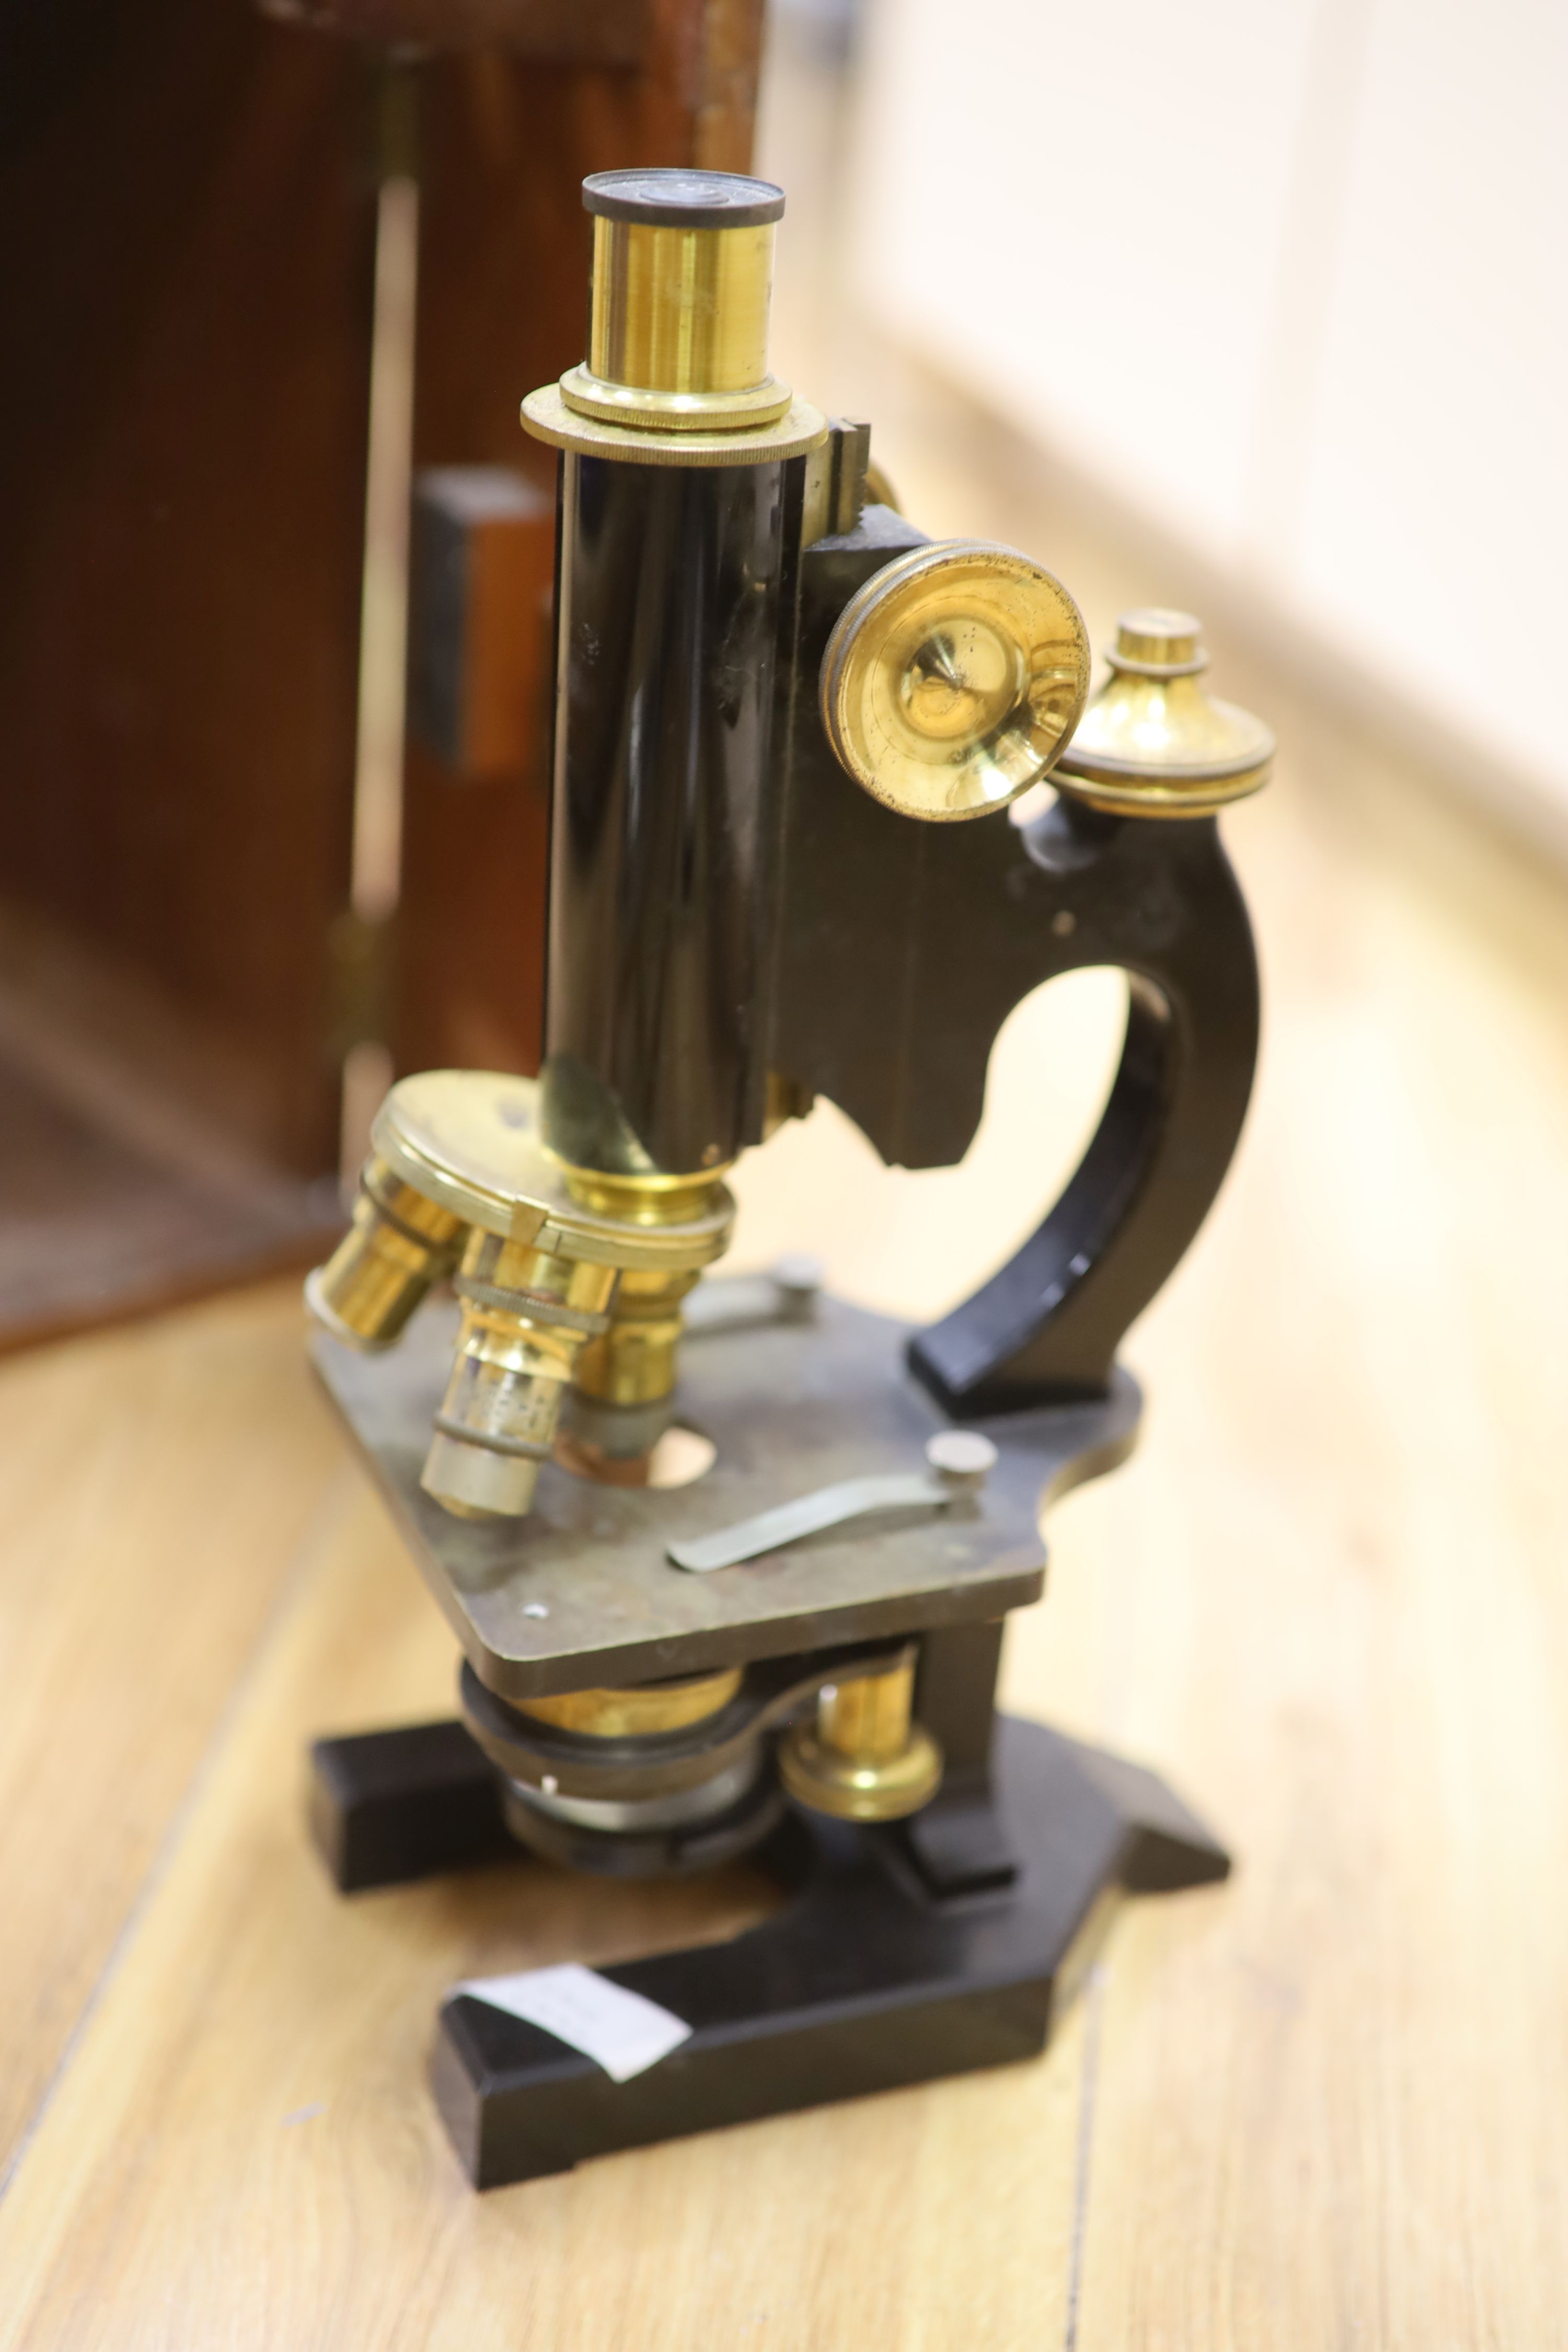 A mahogany cased microscope and veterinary equipment